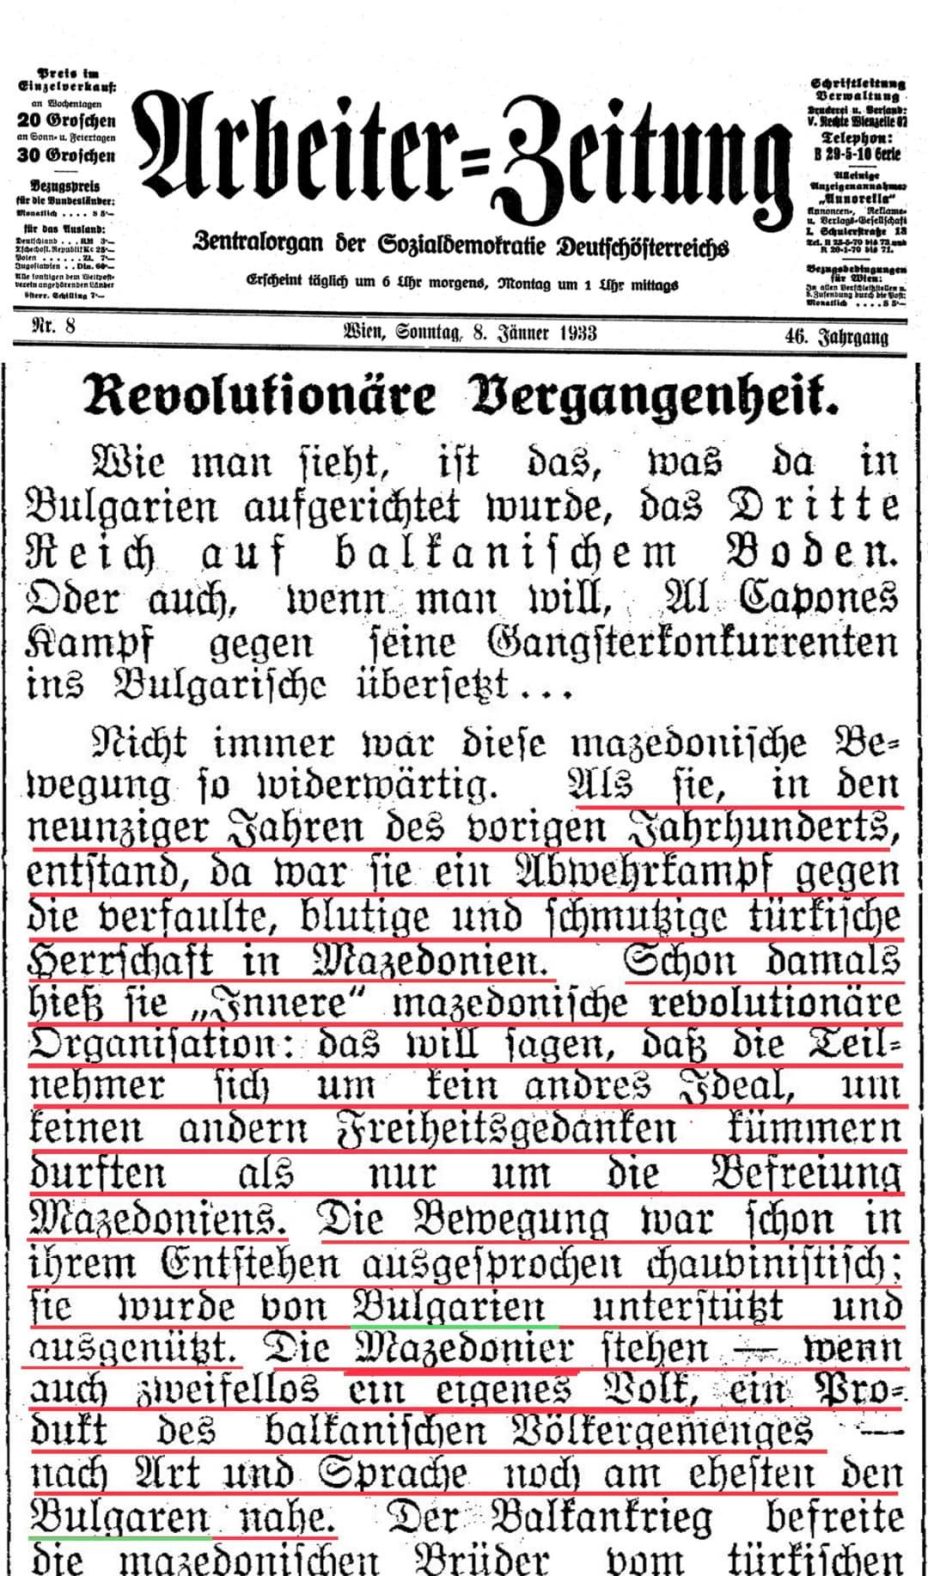 1933.01.08_Arbeiter Zeitung - Revolutionäre Vergangenheit